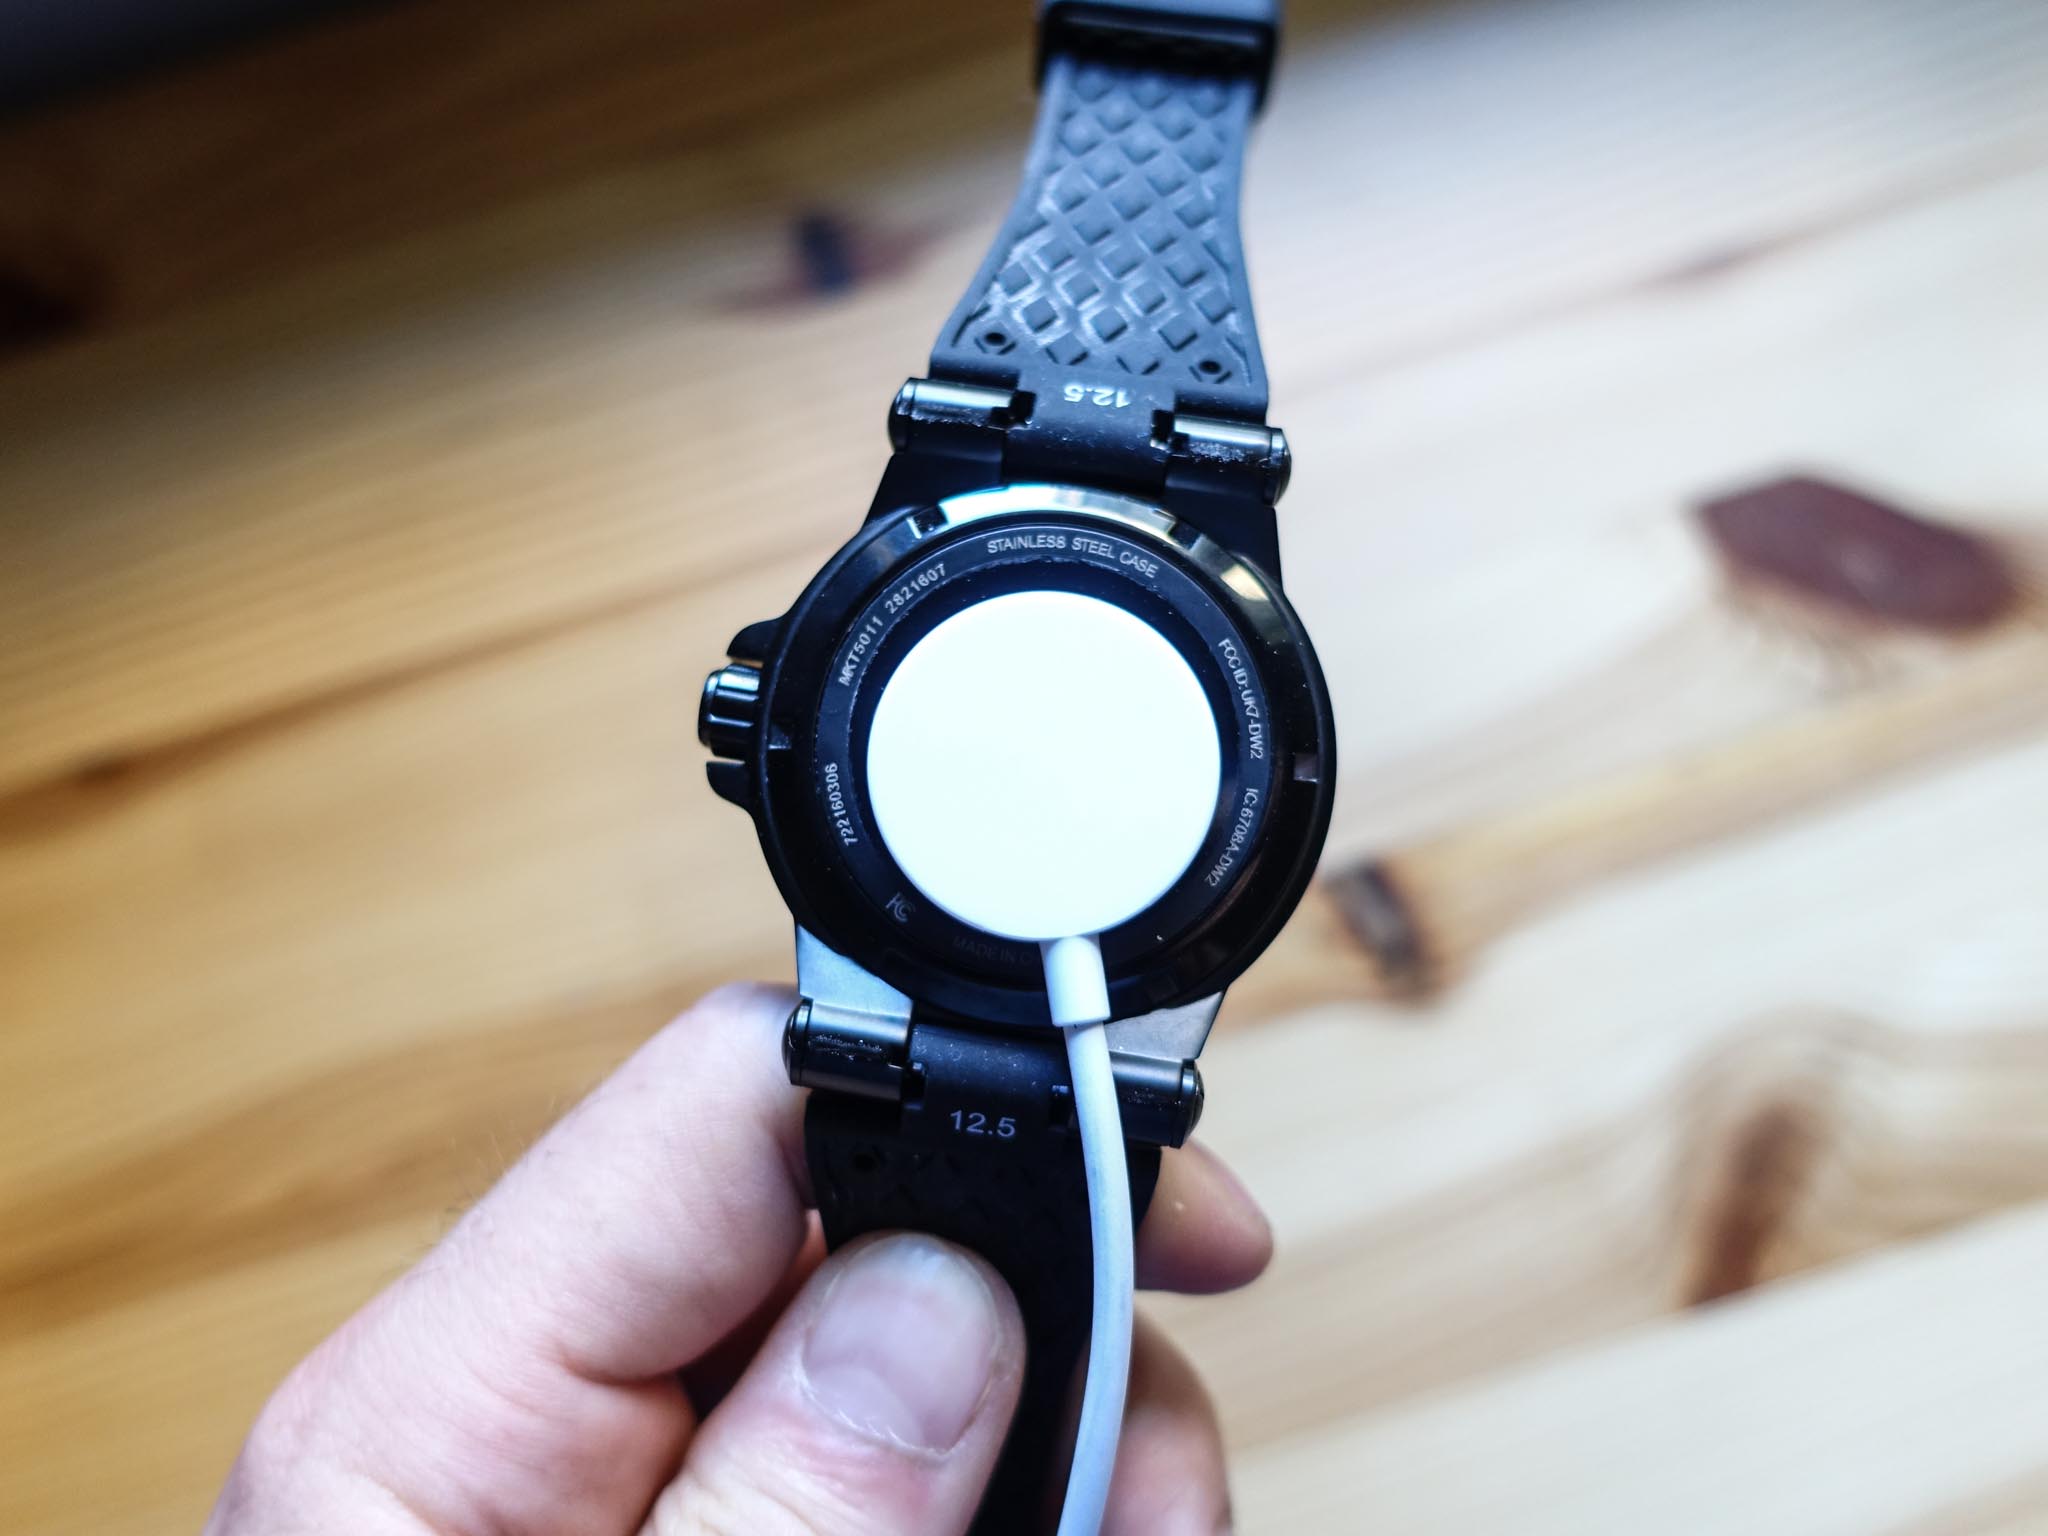 michael kors access dylan smartwatch